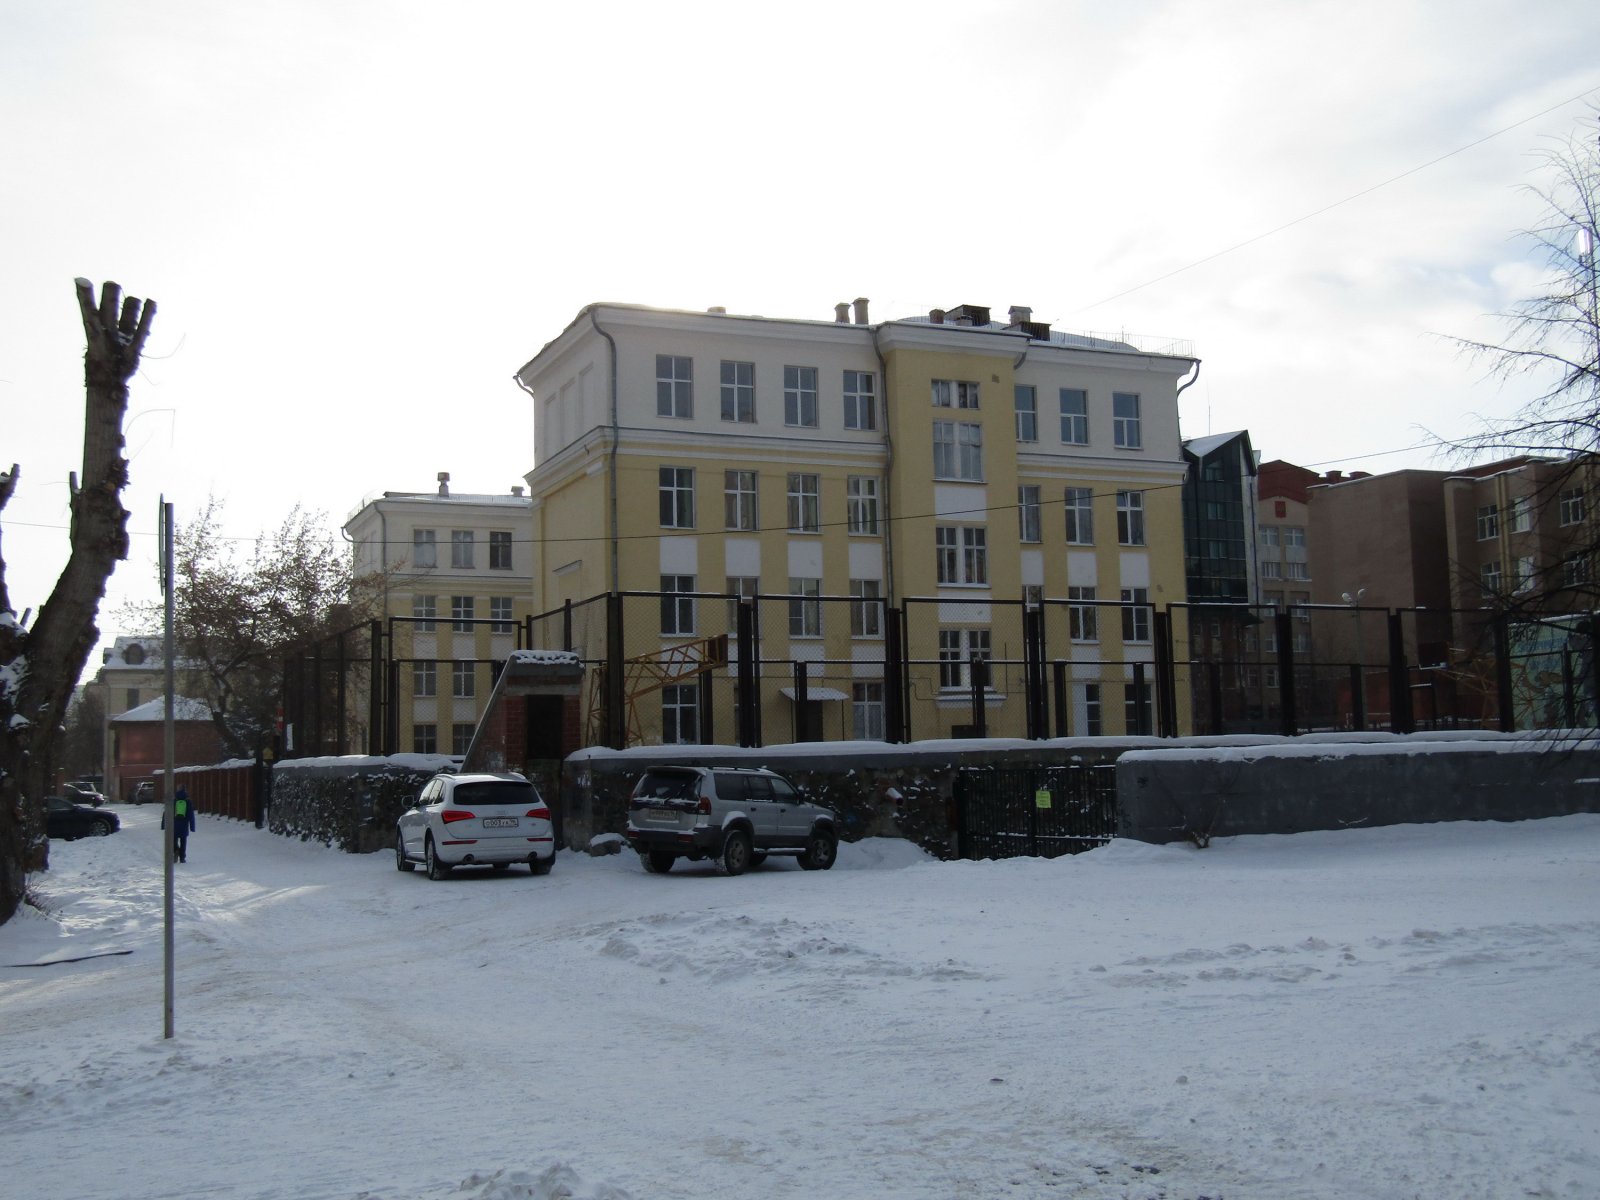 Есть признаки кишечной инфекции: в школе в центре Екатеринбурга заболели дети